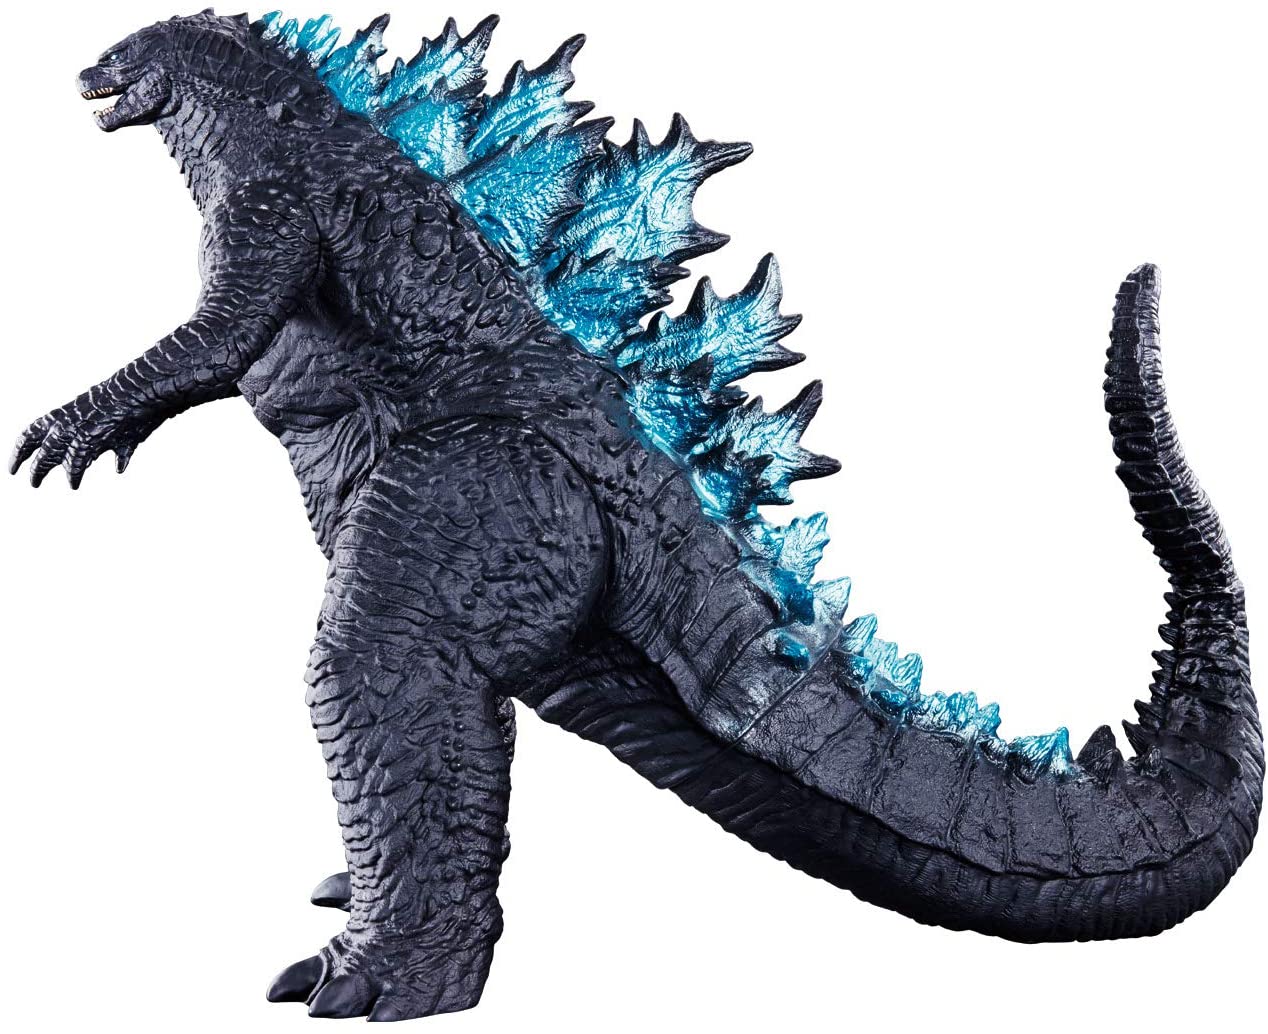 Bandai Kaiju Oh Series Godzilla 2019 King of Monsters Figure